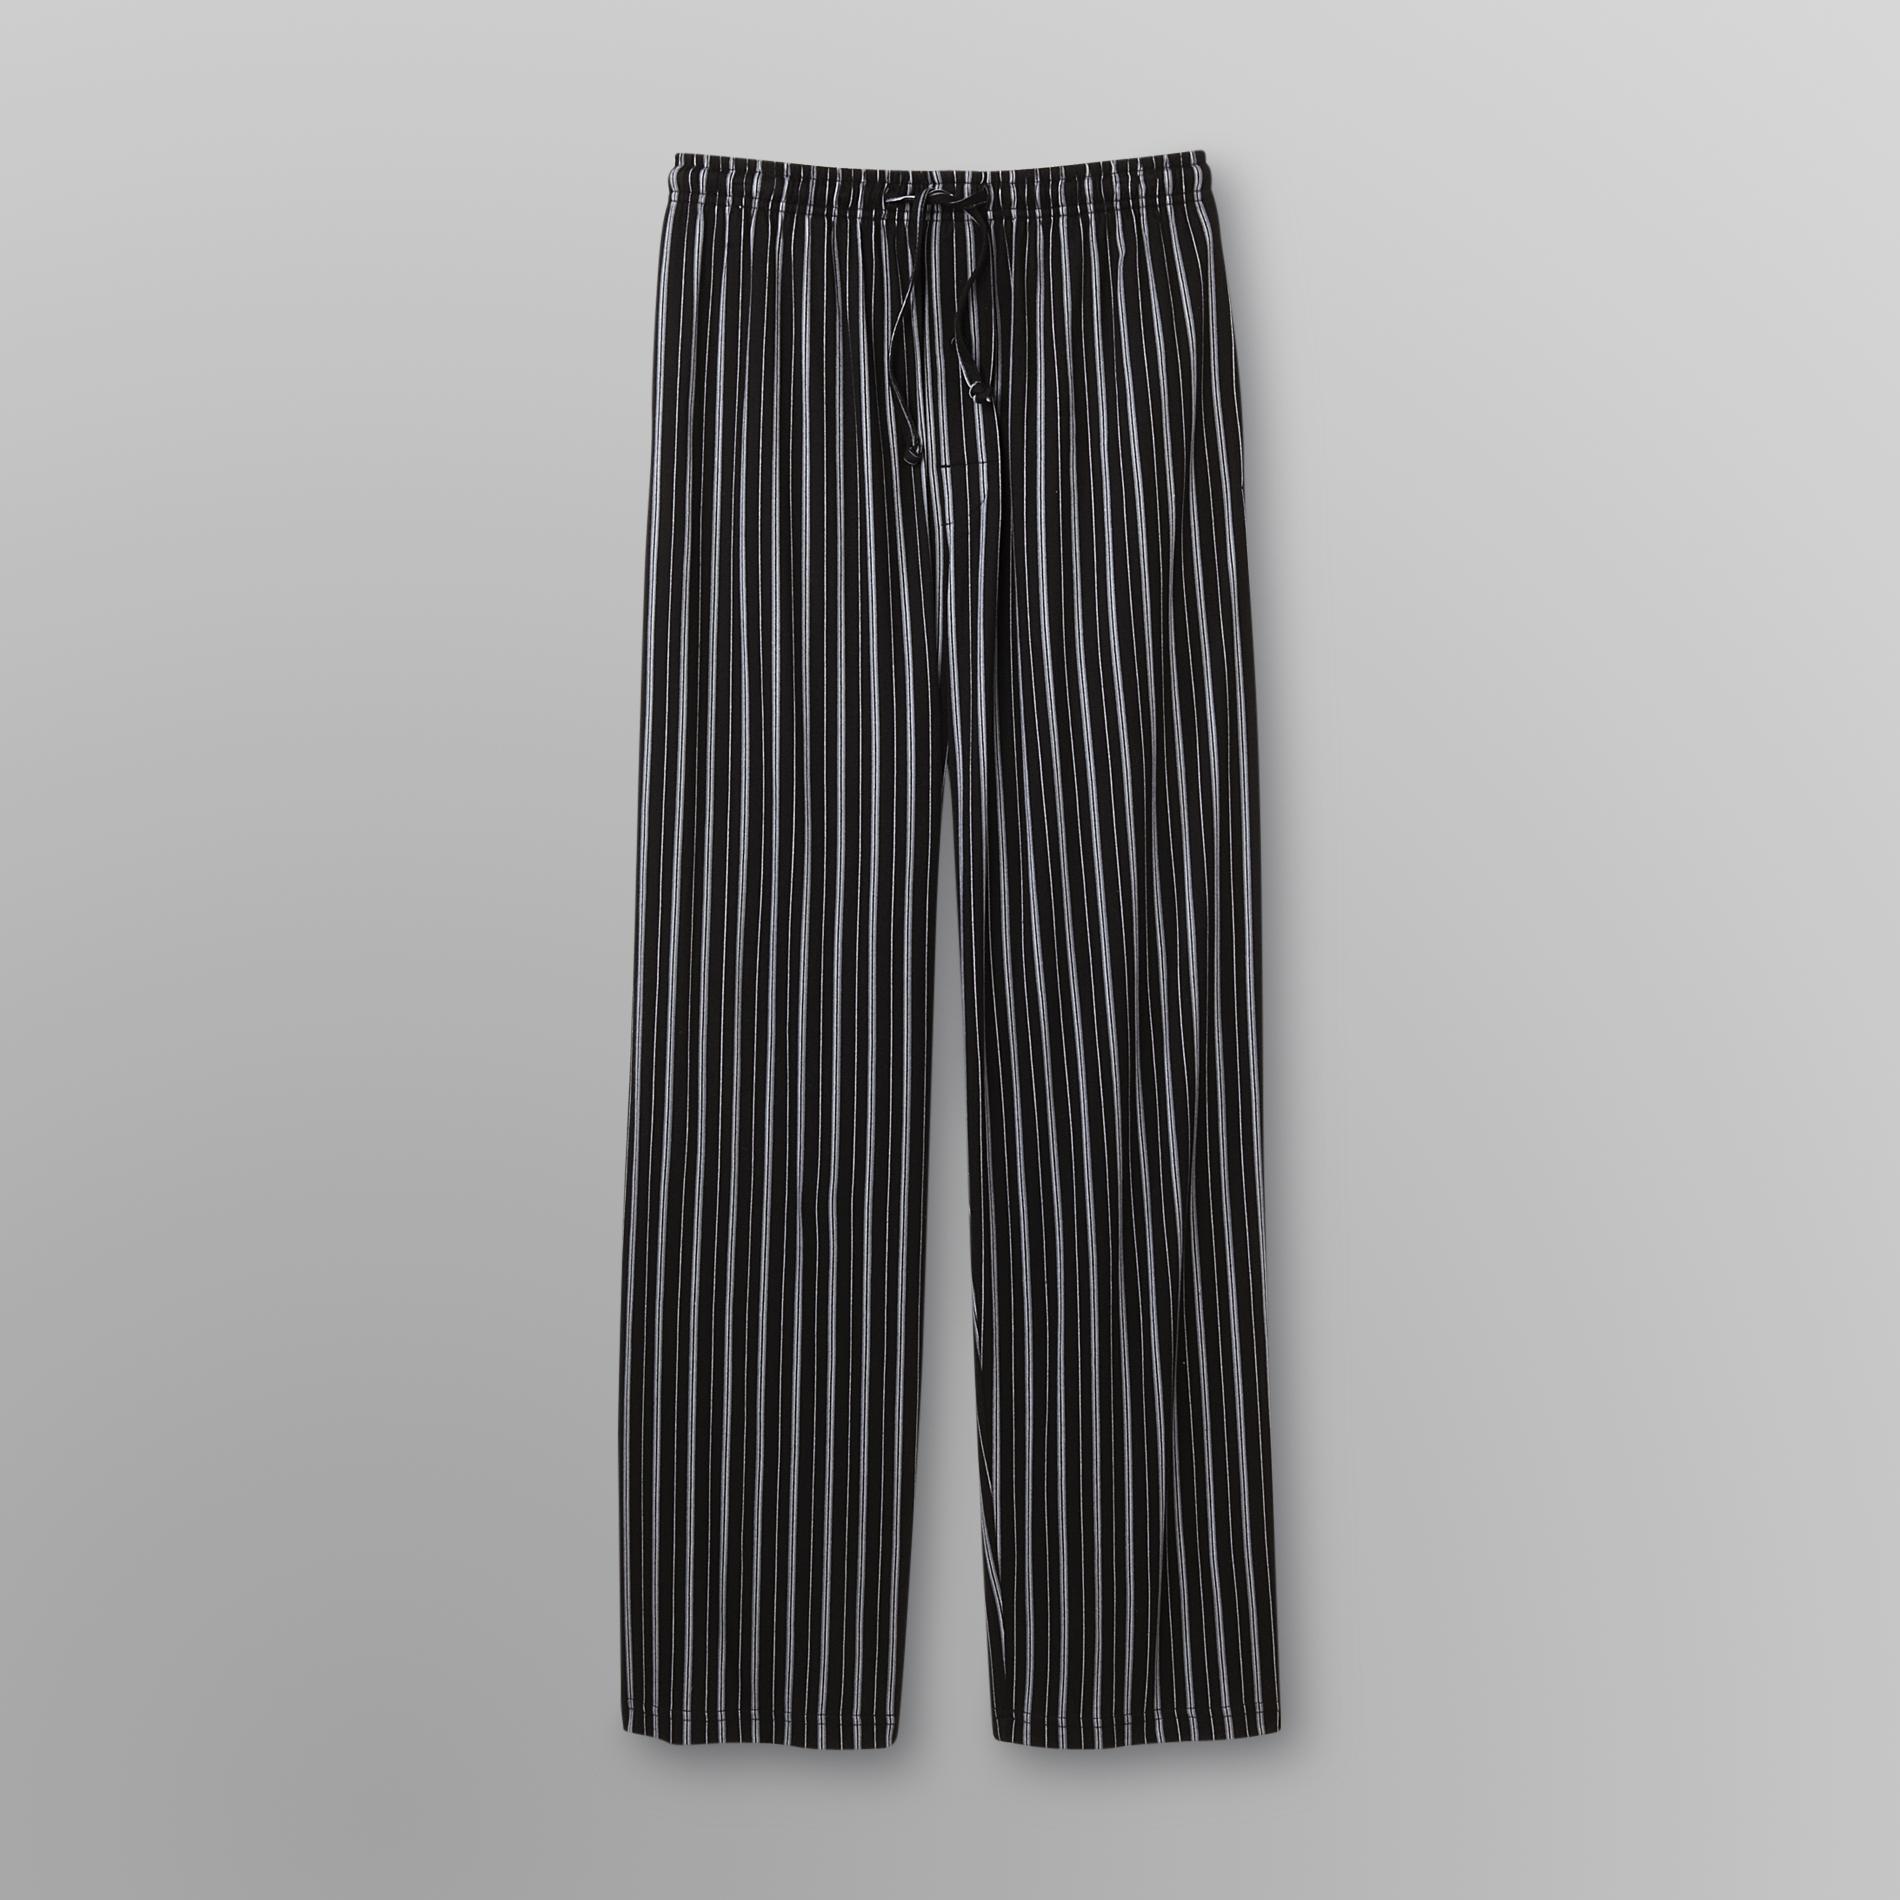 Covington Men's Big & Tall Pajama Pants - Striped